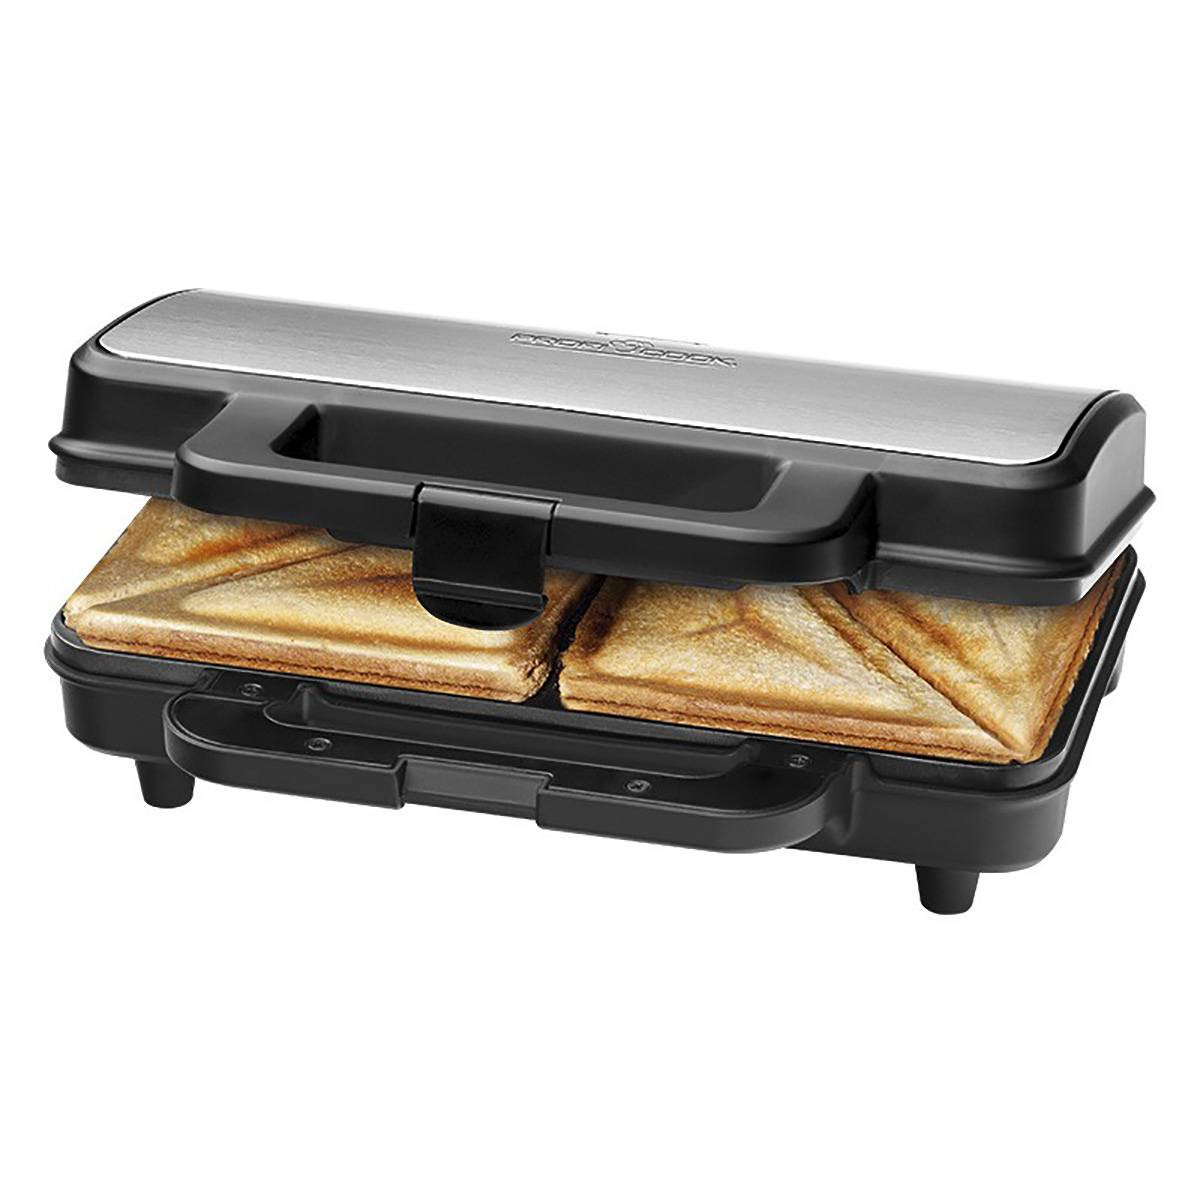 Una sandwichera o emparedadora es una tostadora especial para